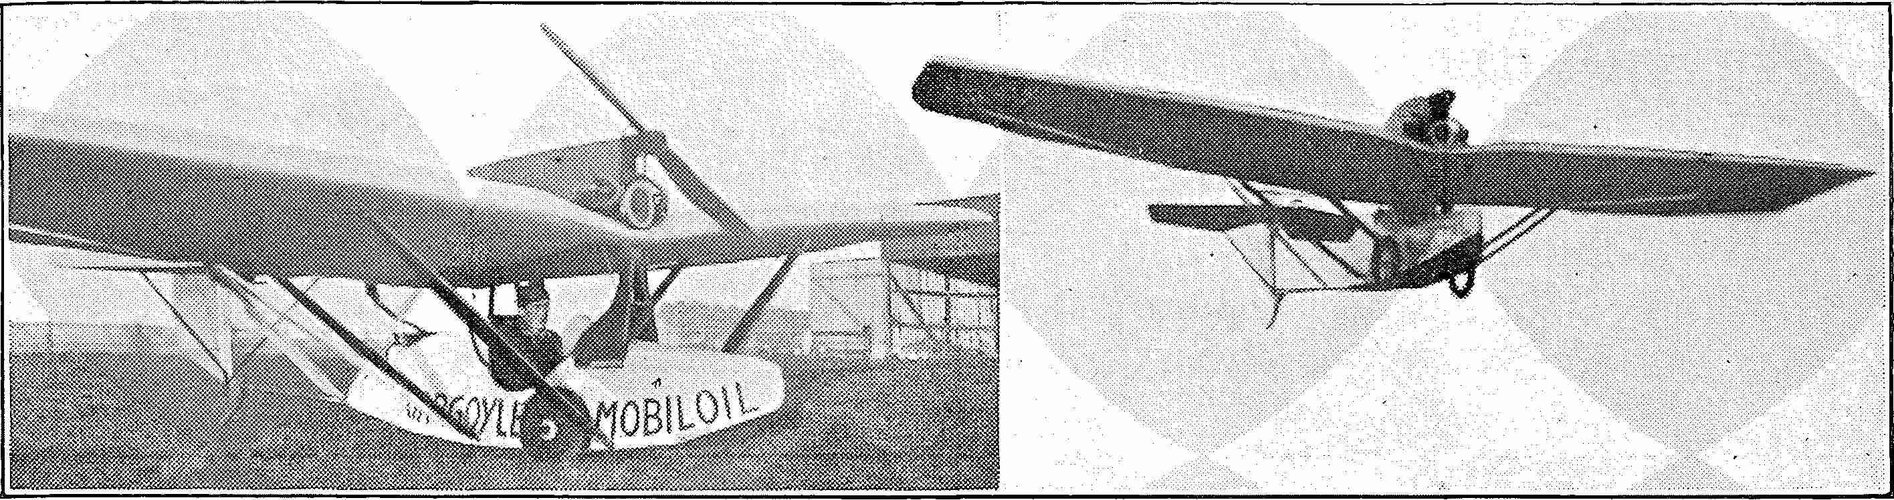 luftfahrt-geschichte-1931-593.jpg